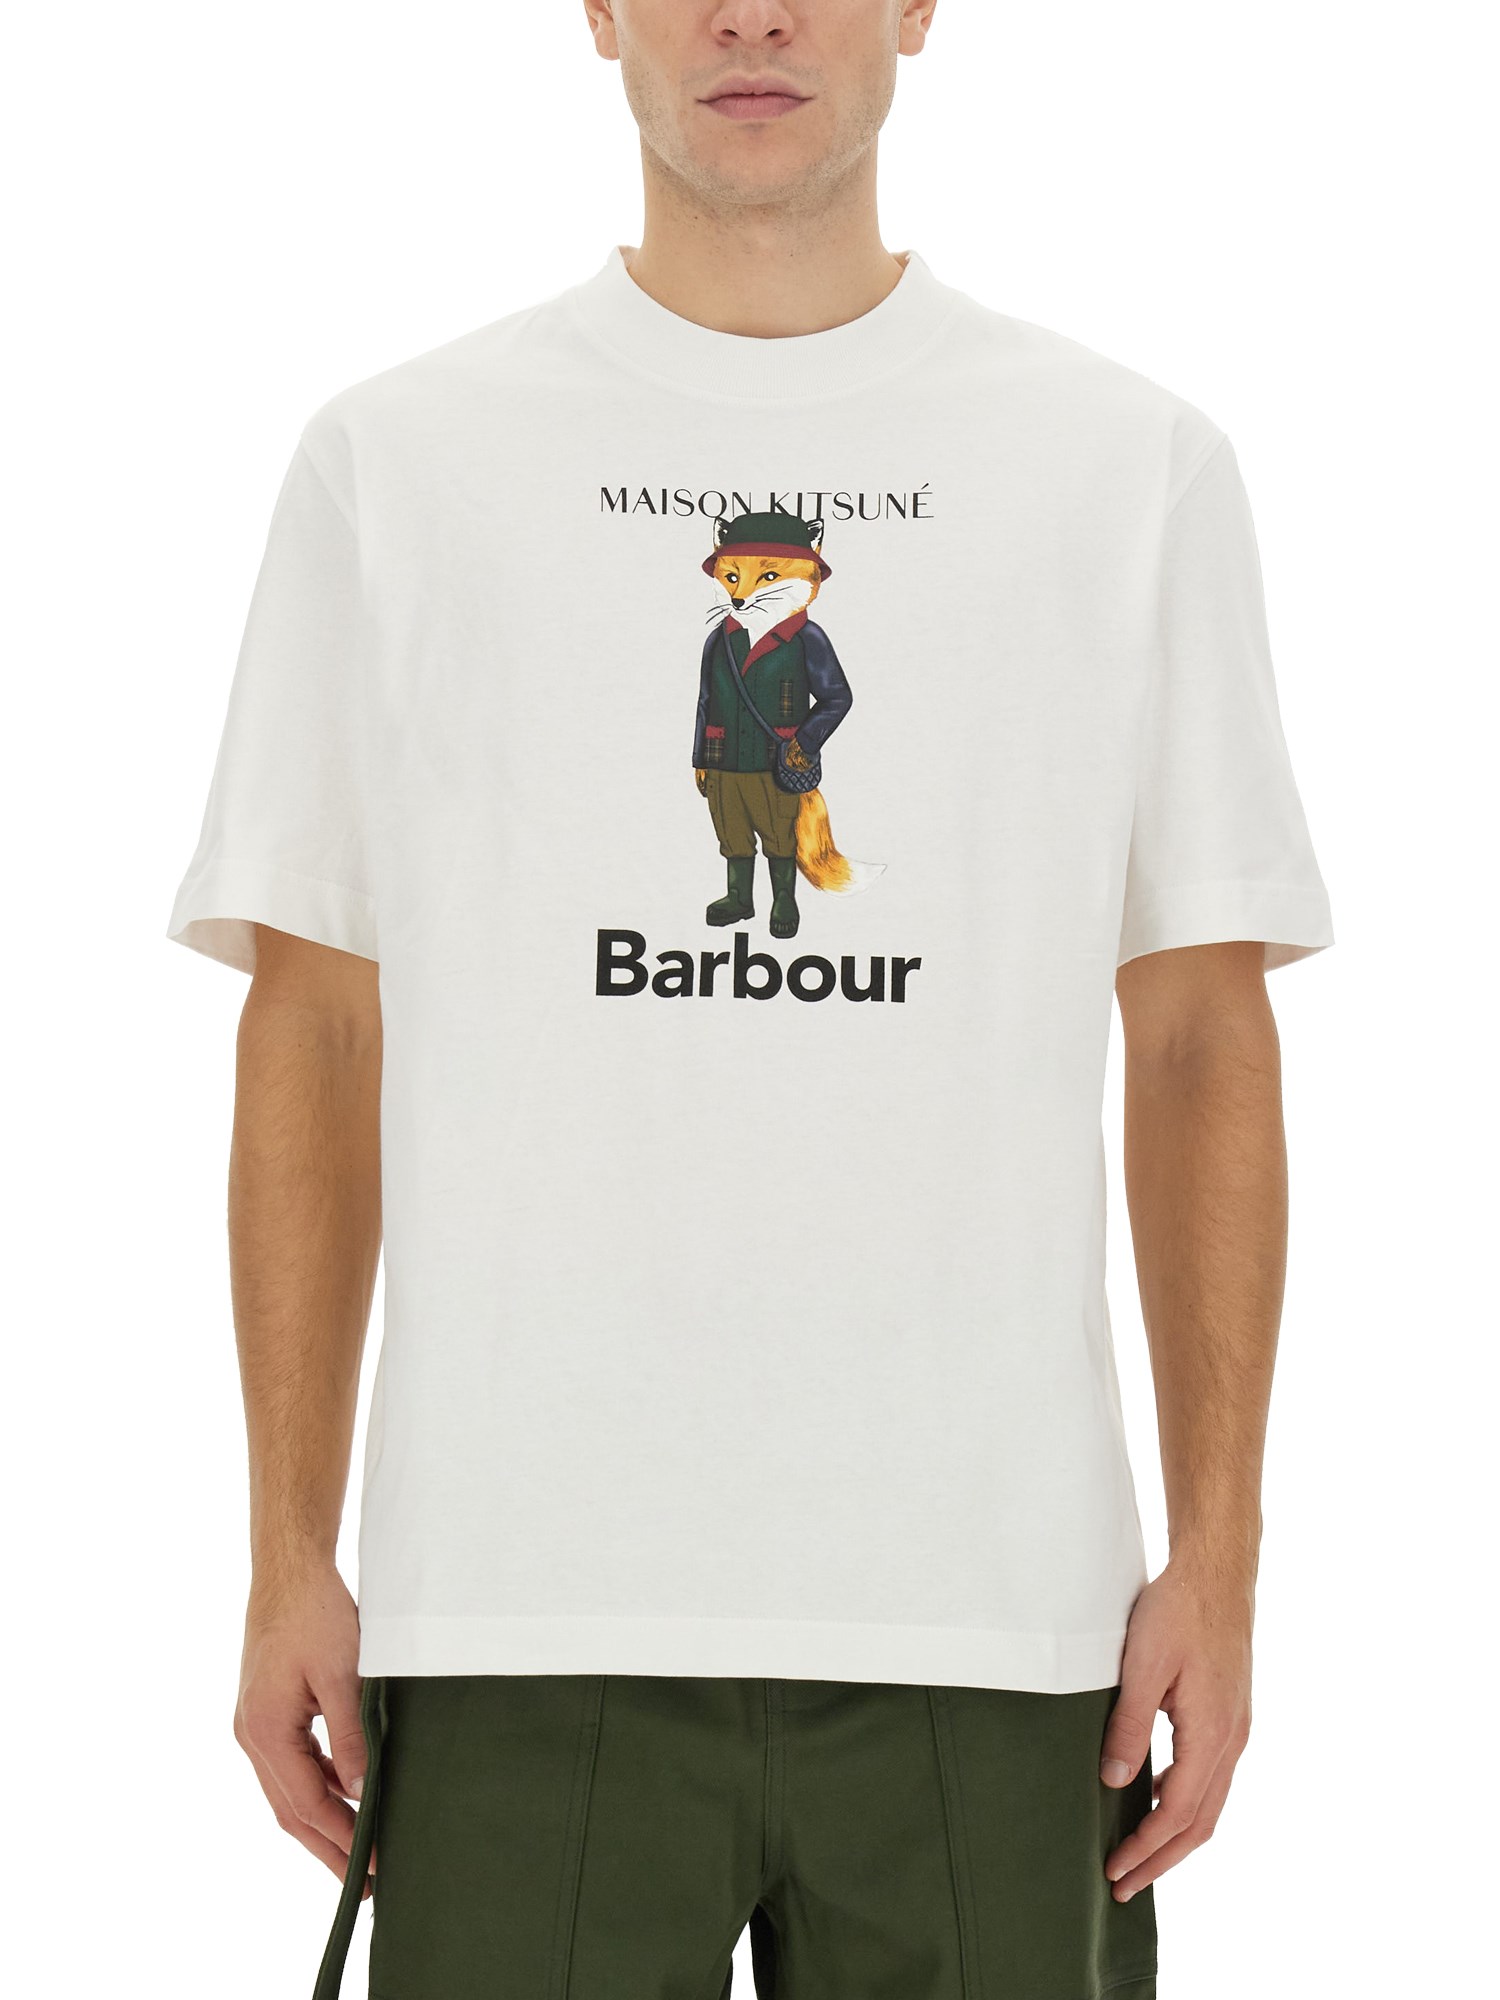 maison kitsuné x barbour maison kitsuné x barbour beaufort fox print t-shirt